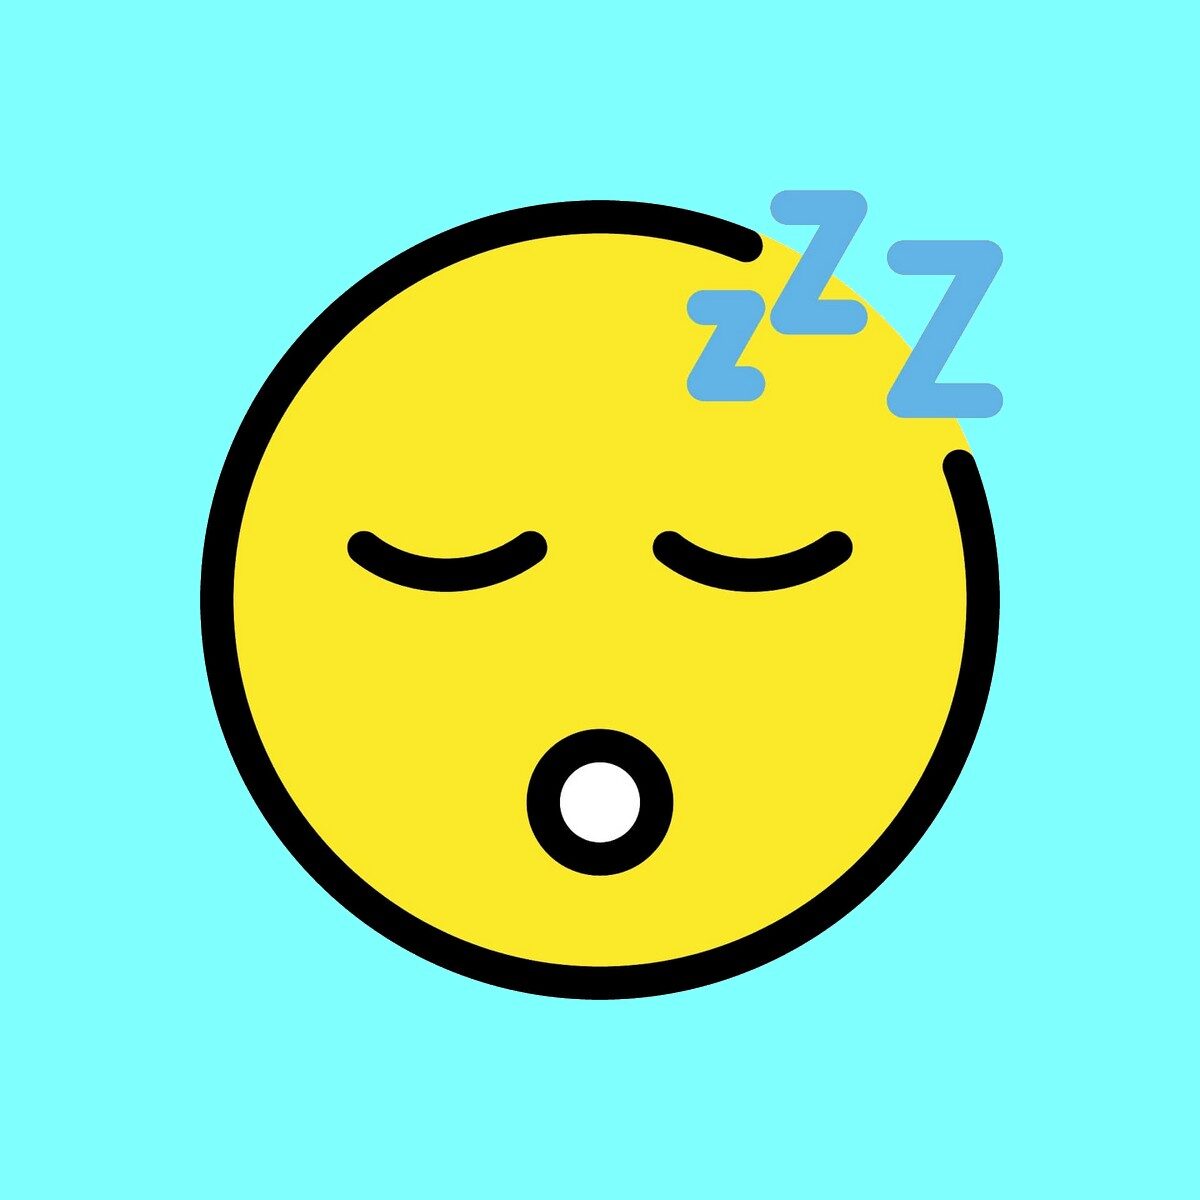 immagine dell'emoji